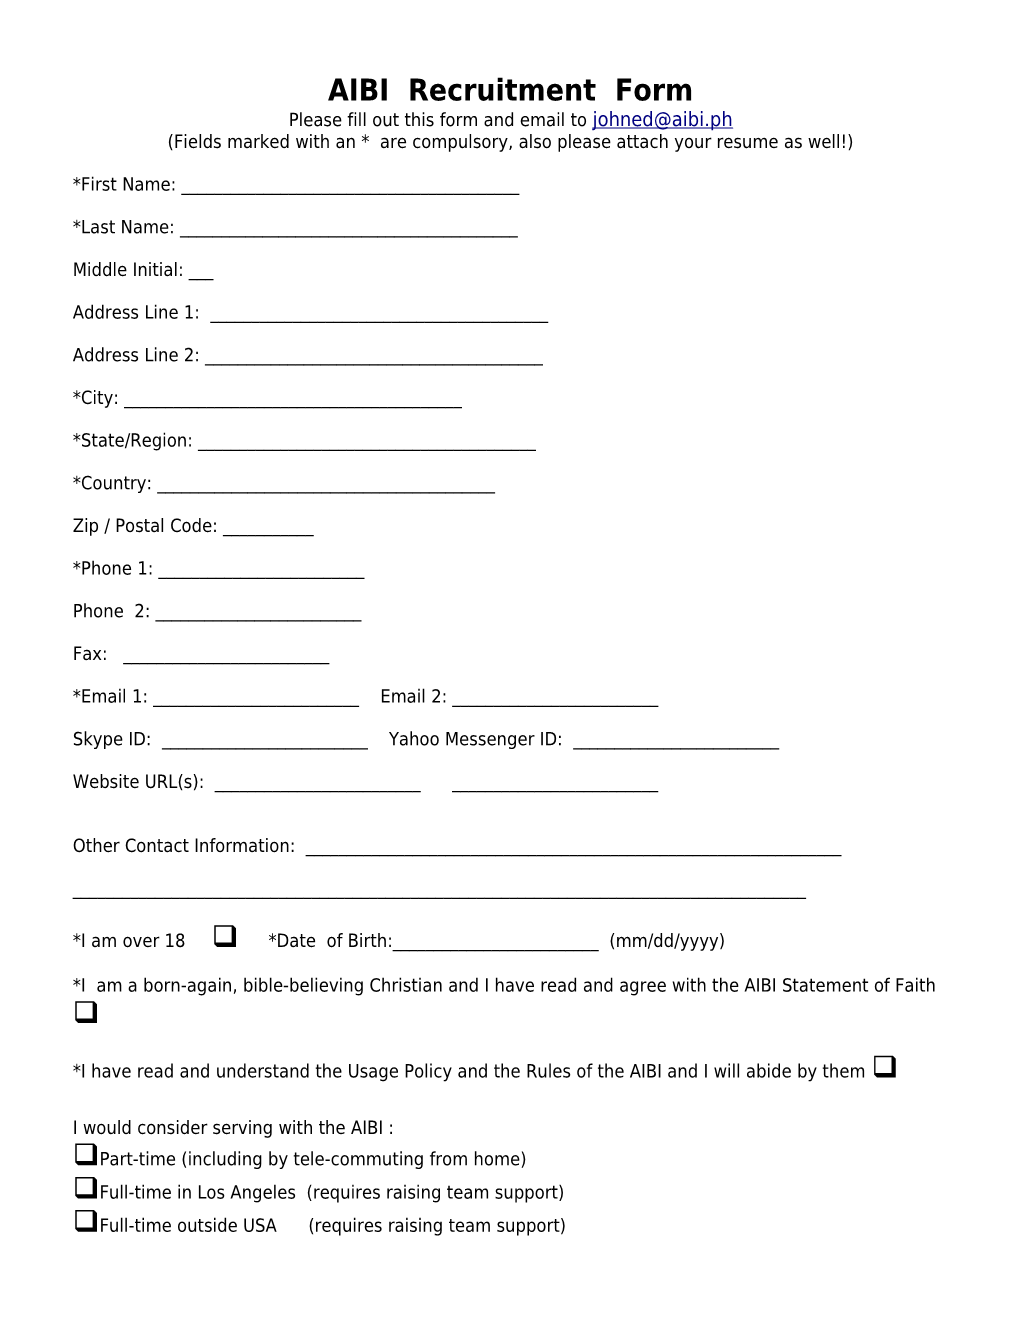 AIBI Recruitment Form